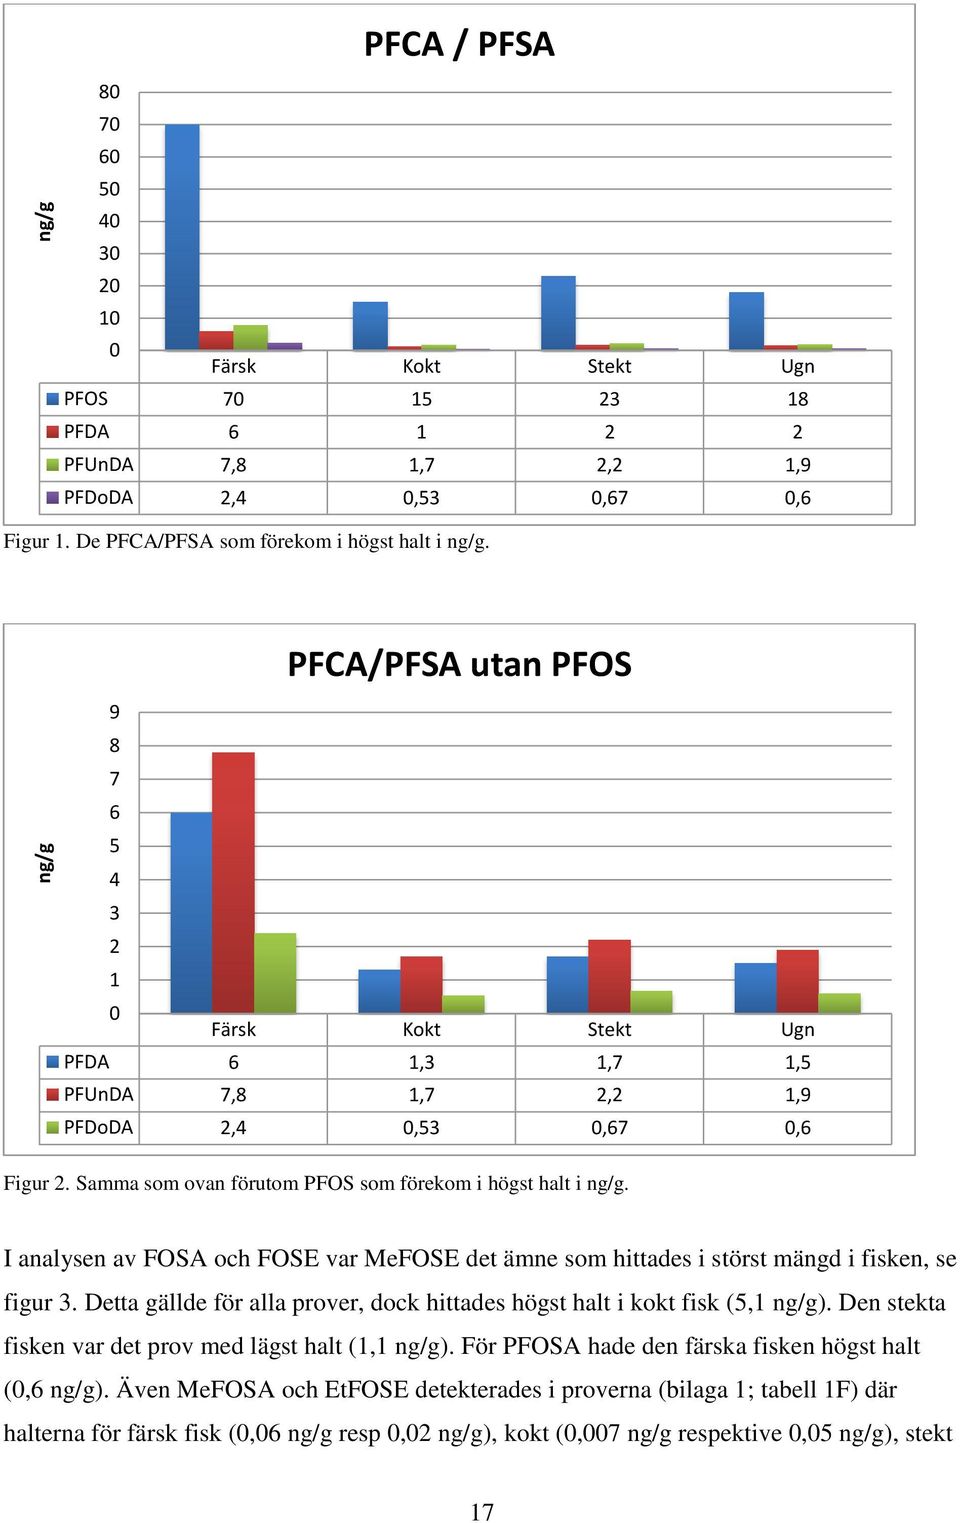 Samma som ovan förutom PFOS som förekom i högst halt i ng/g. I analysen av FOSA och FOSE var MeFOSE det ämne som hittades i störst mängd i fisken, se figur 3.